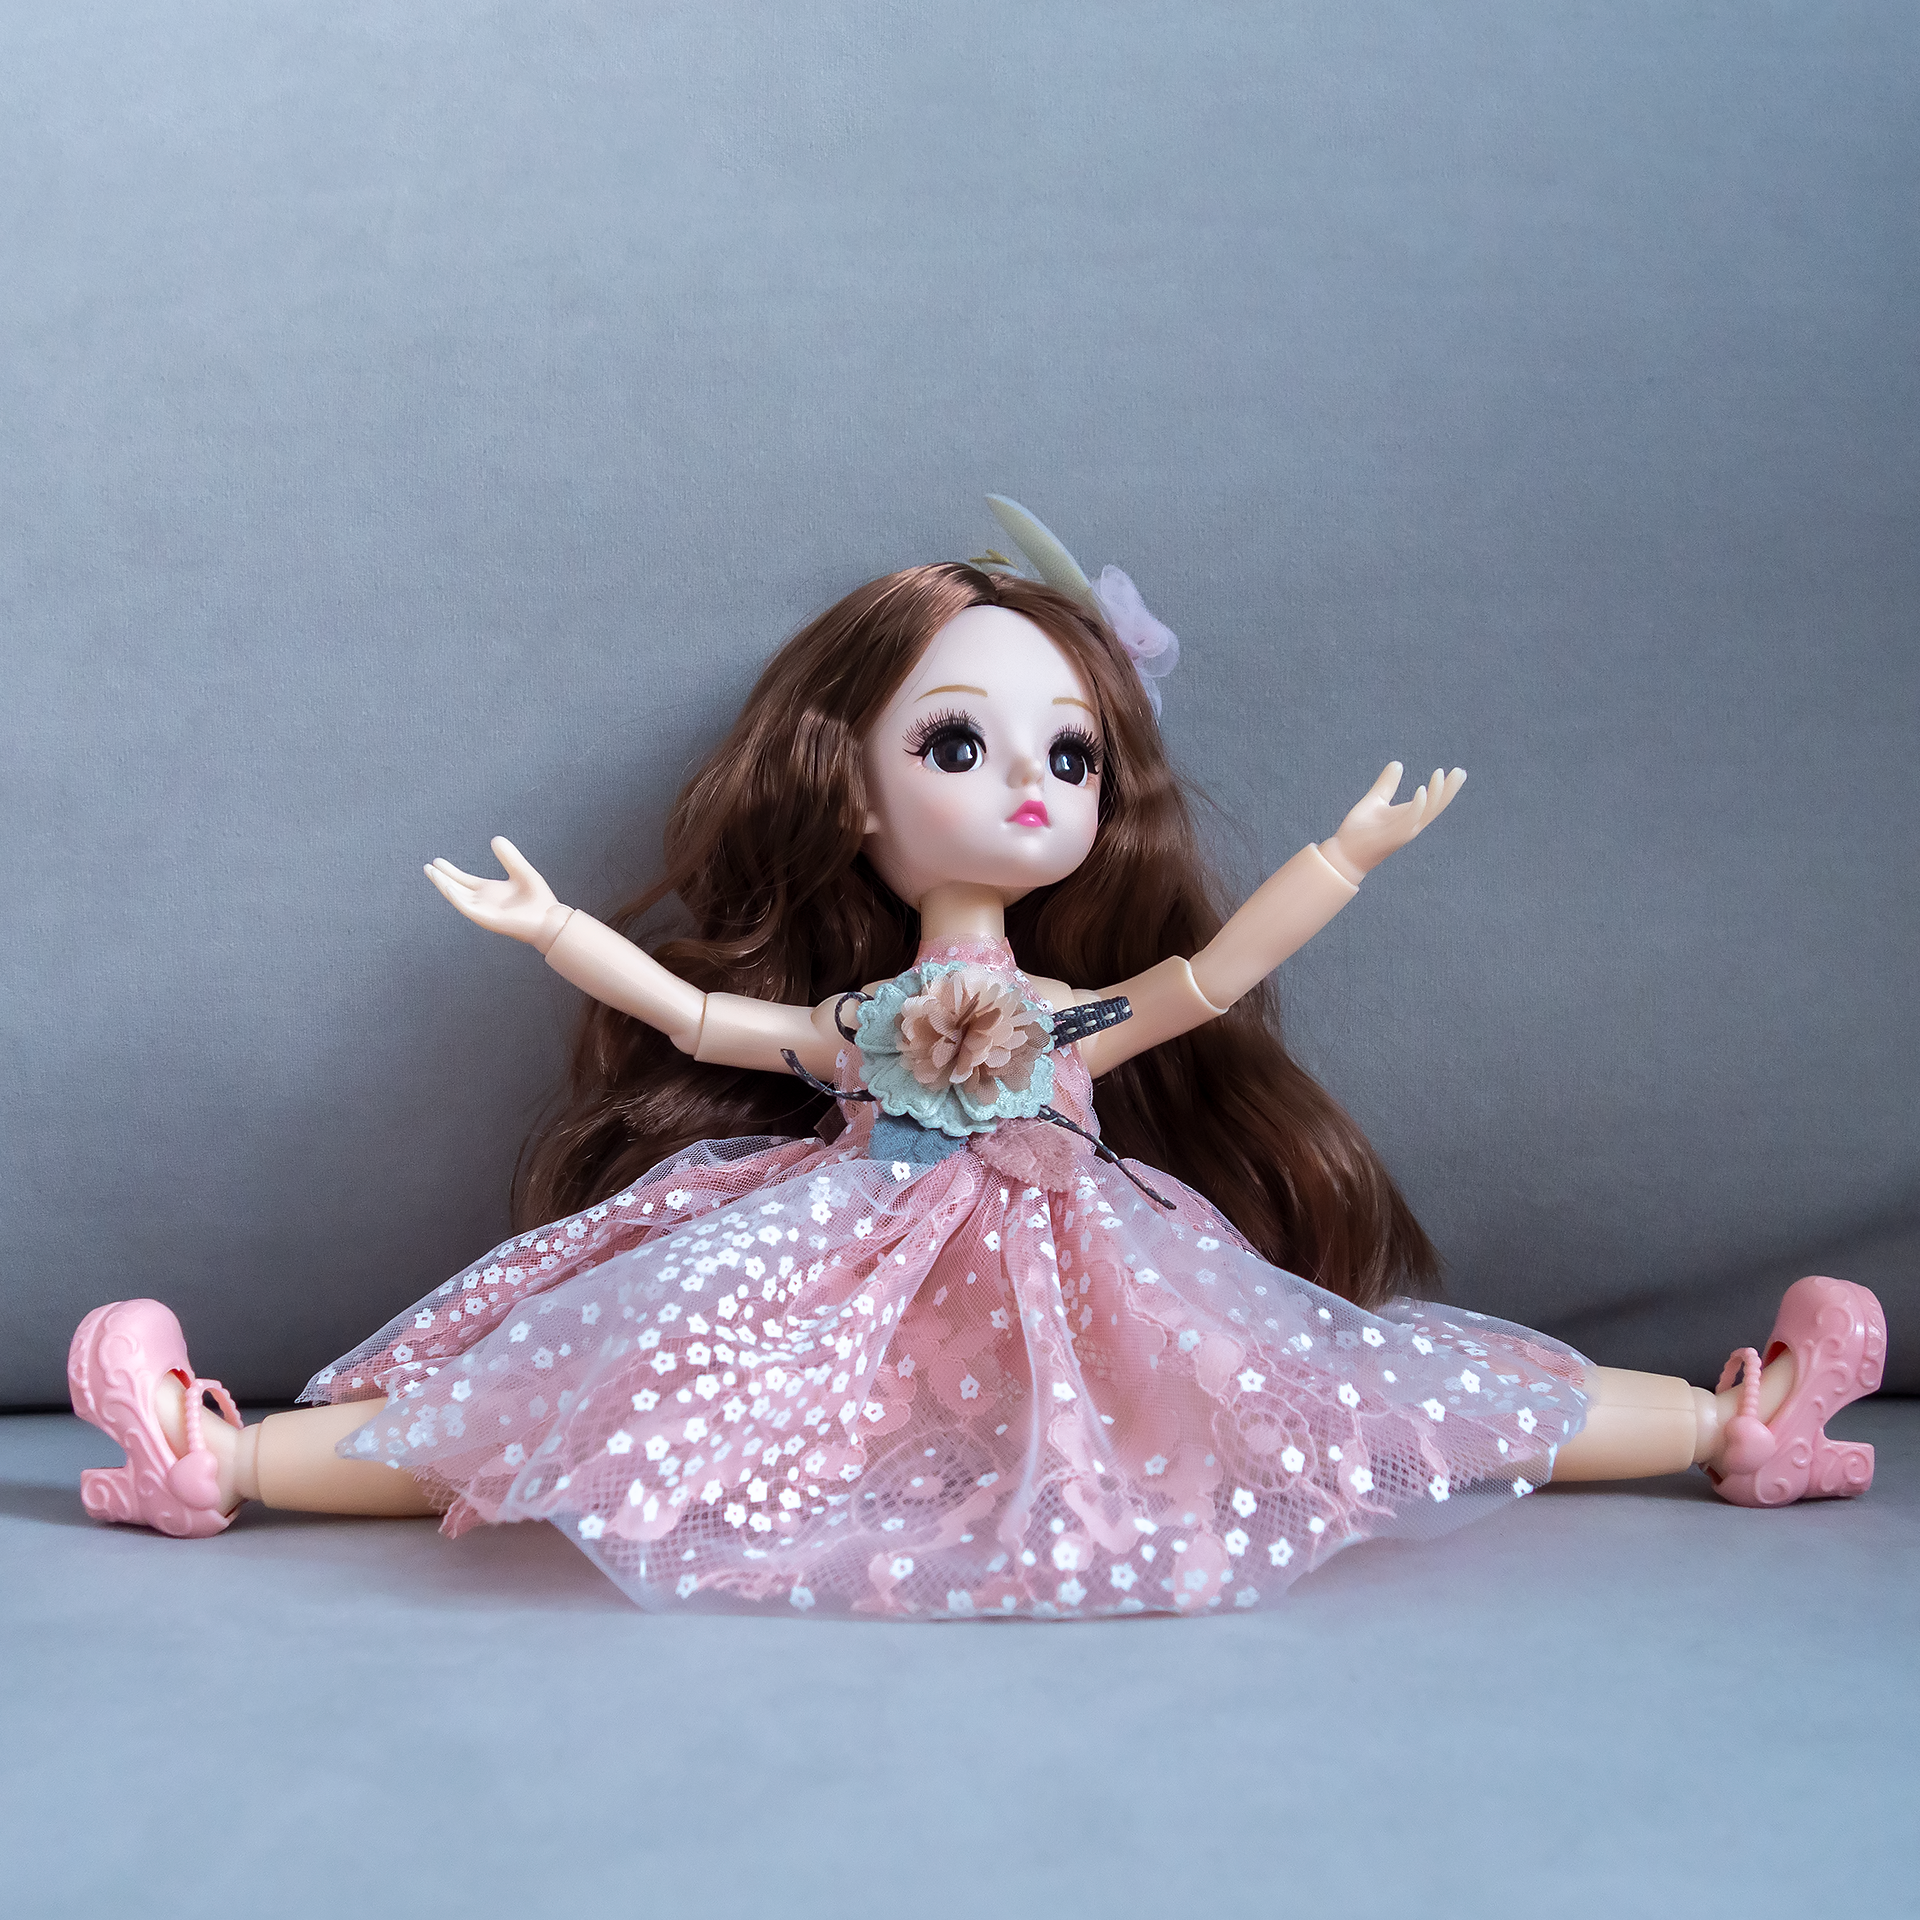 Кукла 31 см / 13 шарниров, в розовом платье с темными волосами, коллекционная реалистичная шарнирная BJD куколка со съемной одеждой